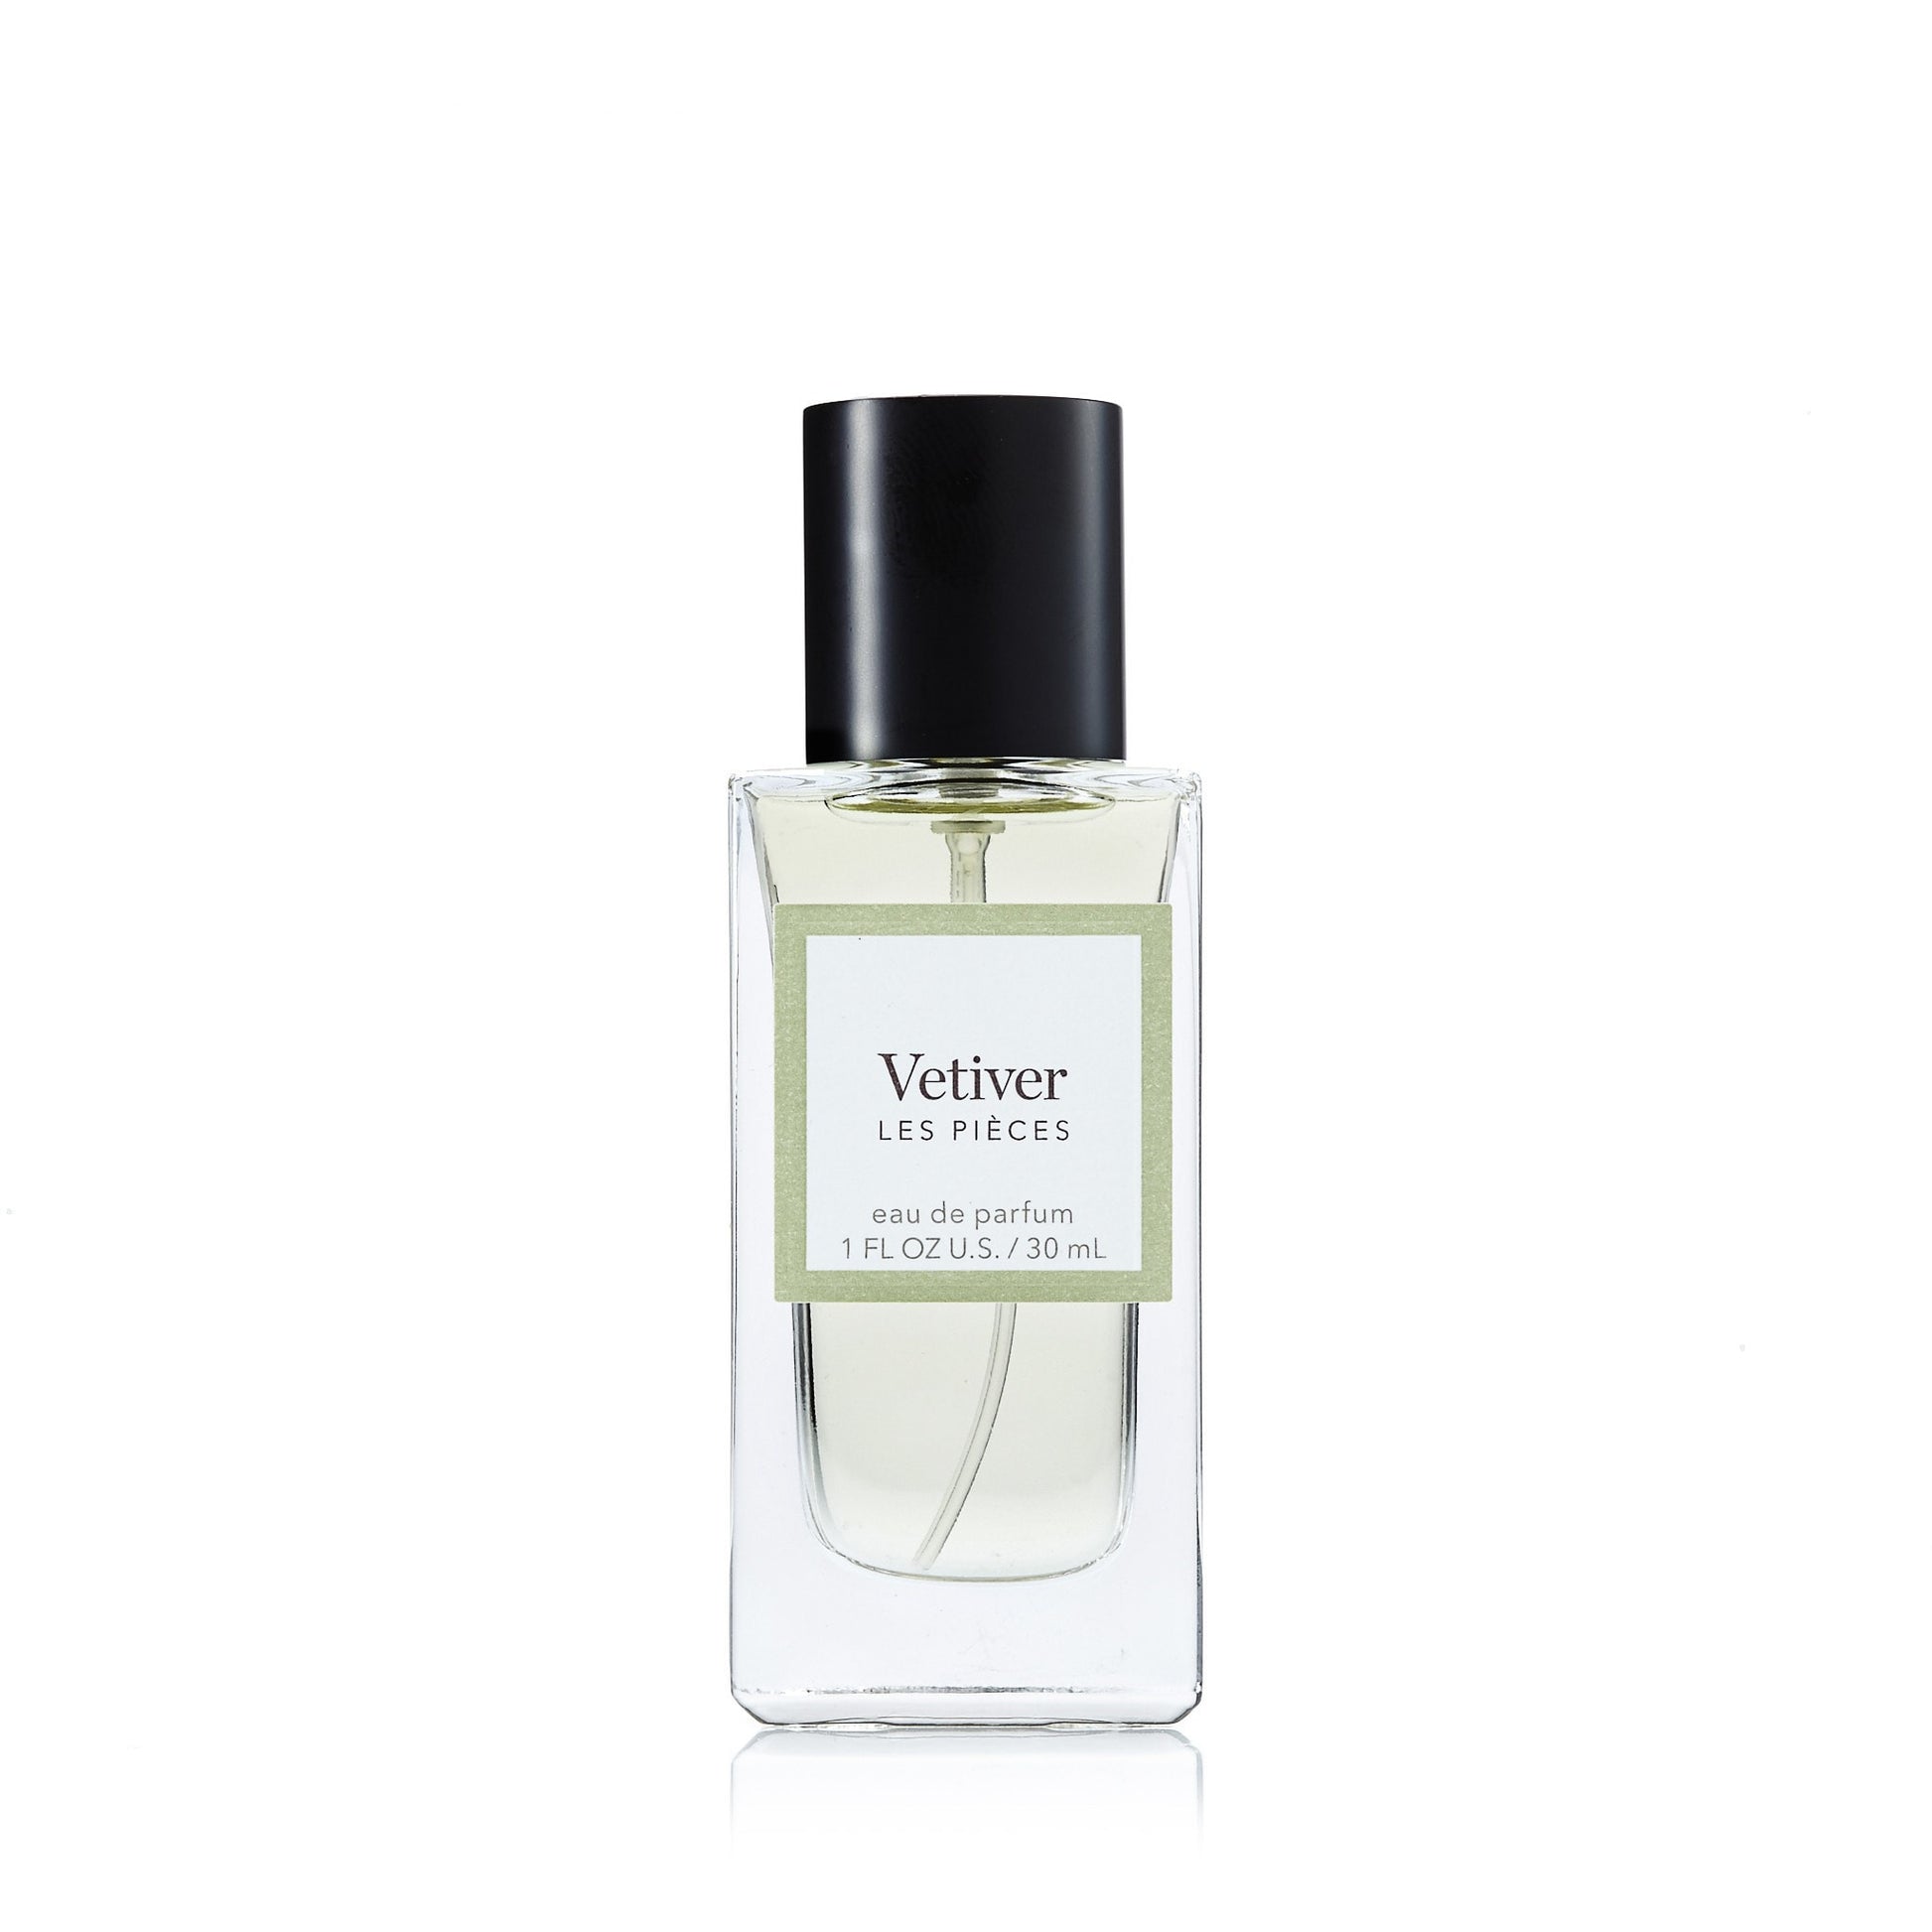 Vetiver Eau de Parfum Spray for Men by Les Pieces, Product image 1